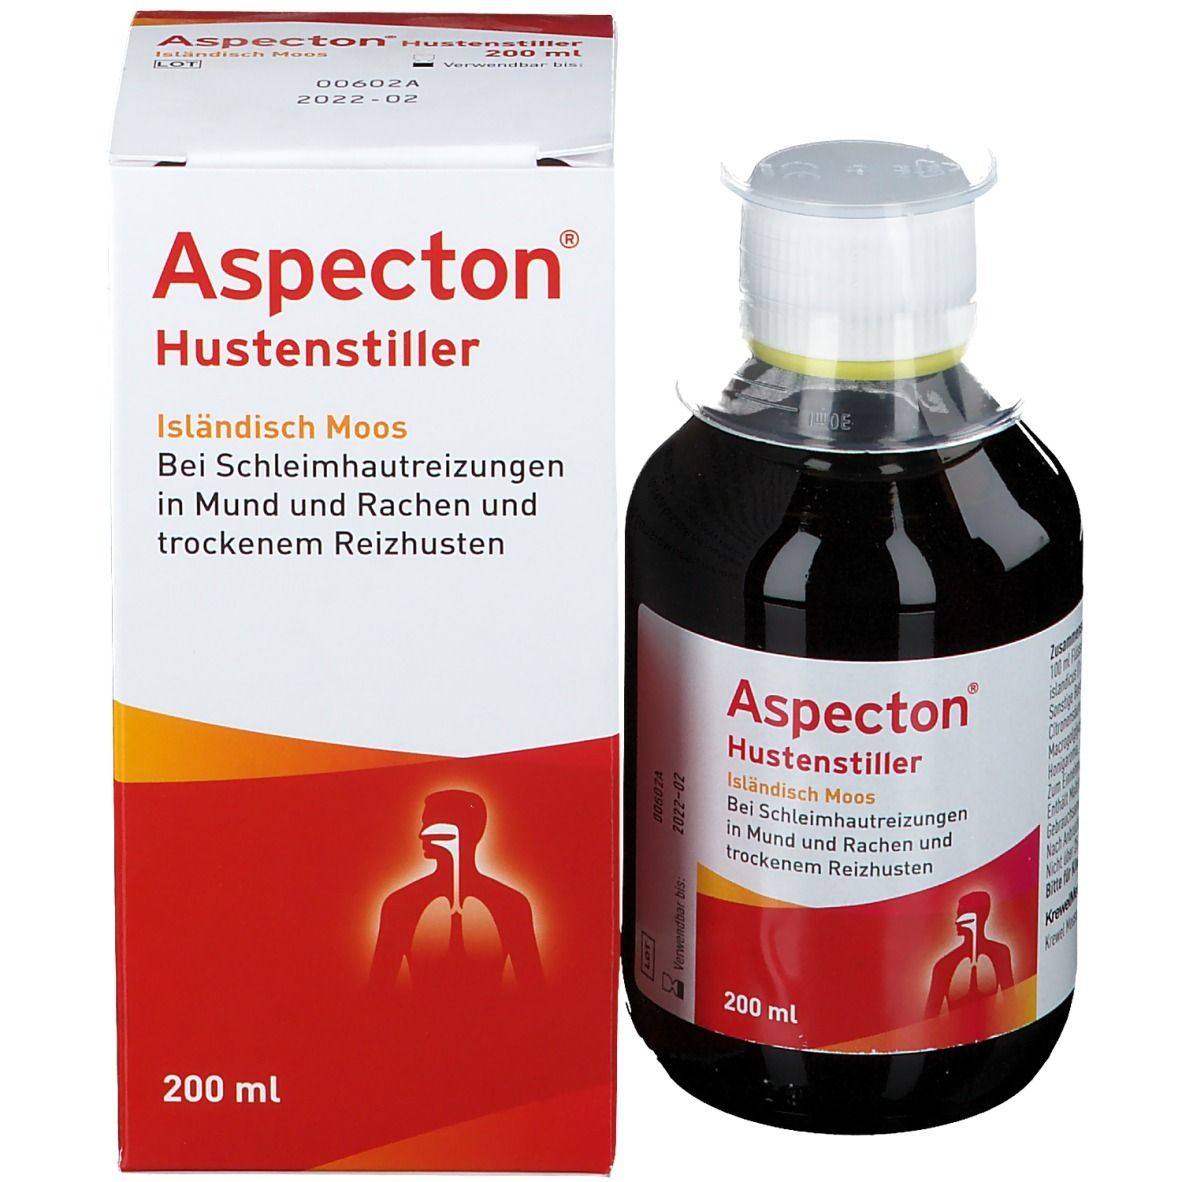 Aspecton® Hustenstiller